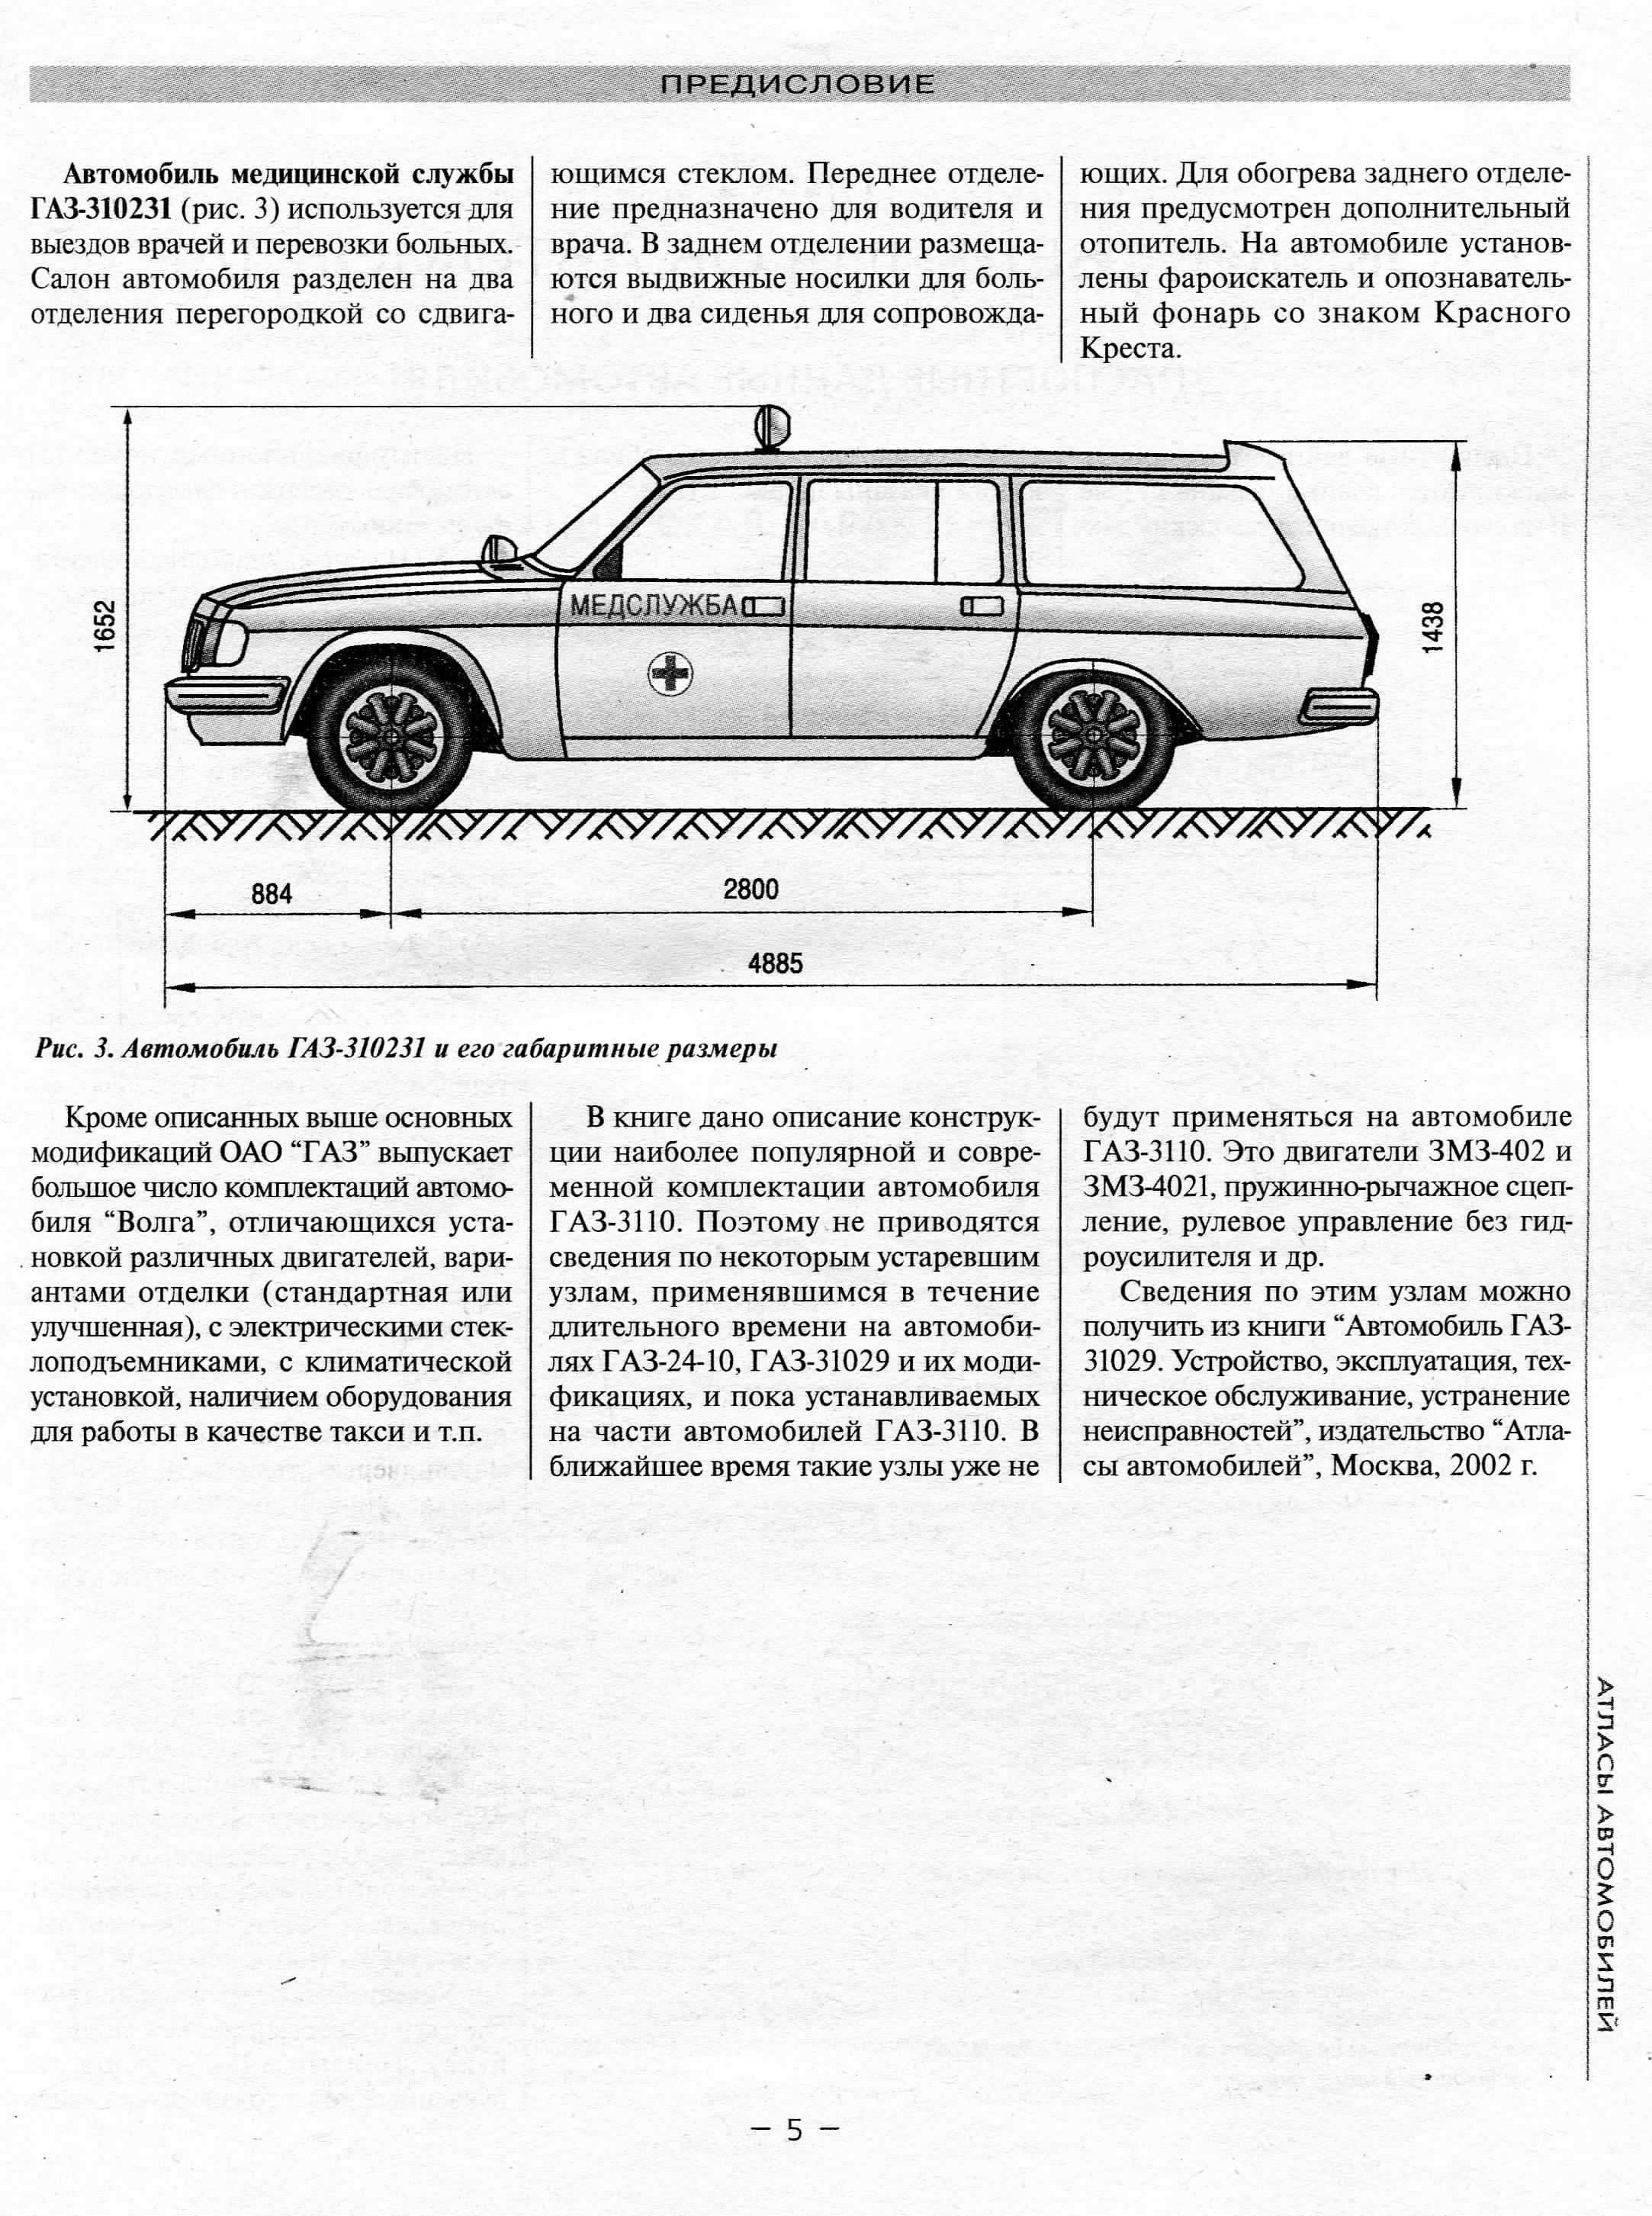 мультимедийное руководство ГАЗ-3110